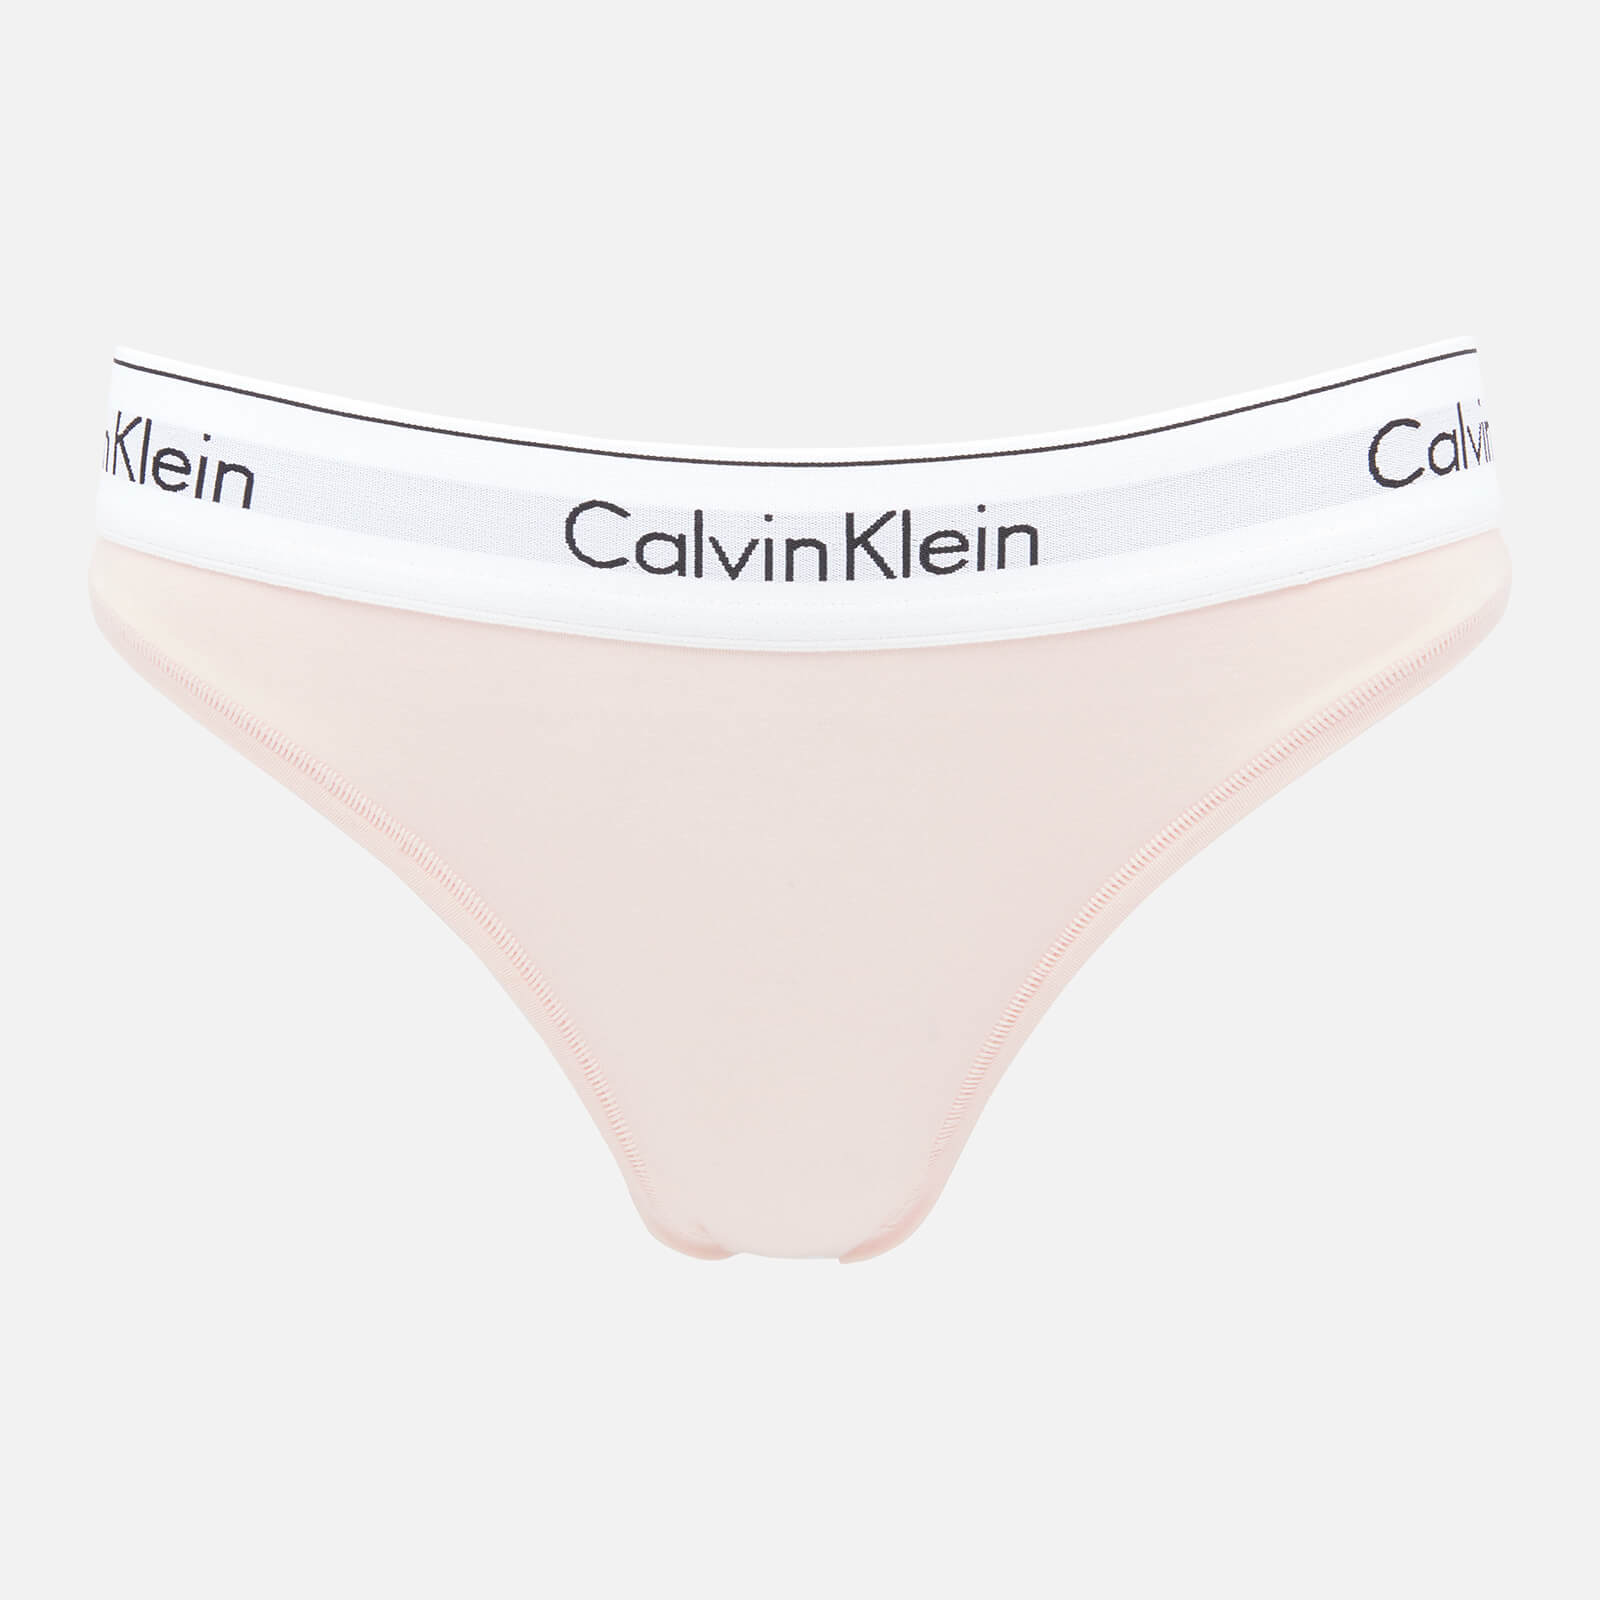 Calvin Klein Women's Modern Cotton Bikini Brief - Nymphs Pink - XS